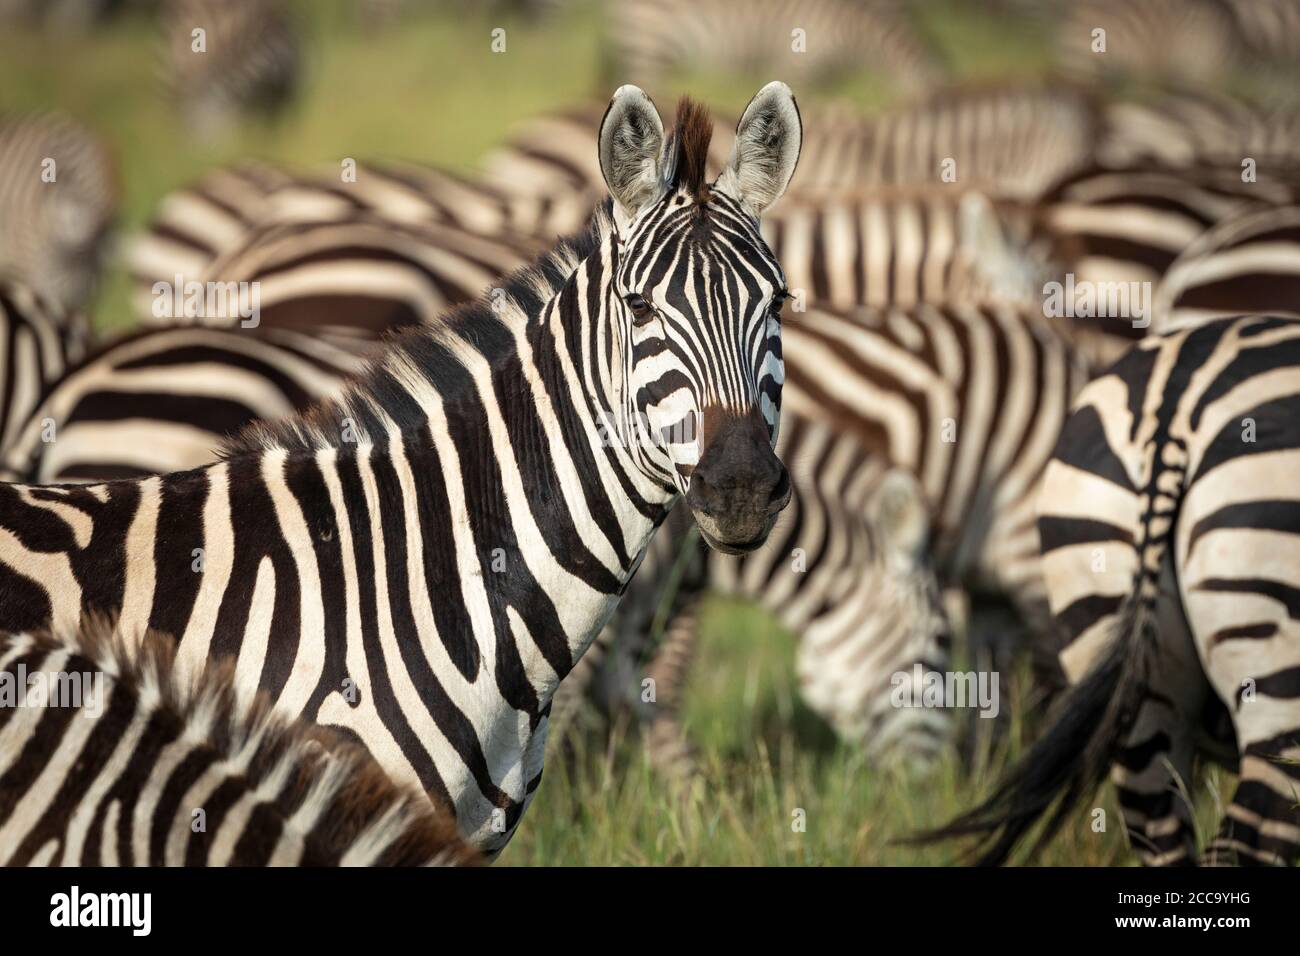 Dirigiti verso il paesaggio della zebra a metà corpo guardando la testa sopra alla telecamera in piedi tra un gregge di zebra Serengeti Tanzania Foto Stock